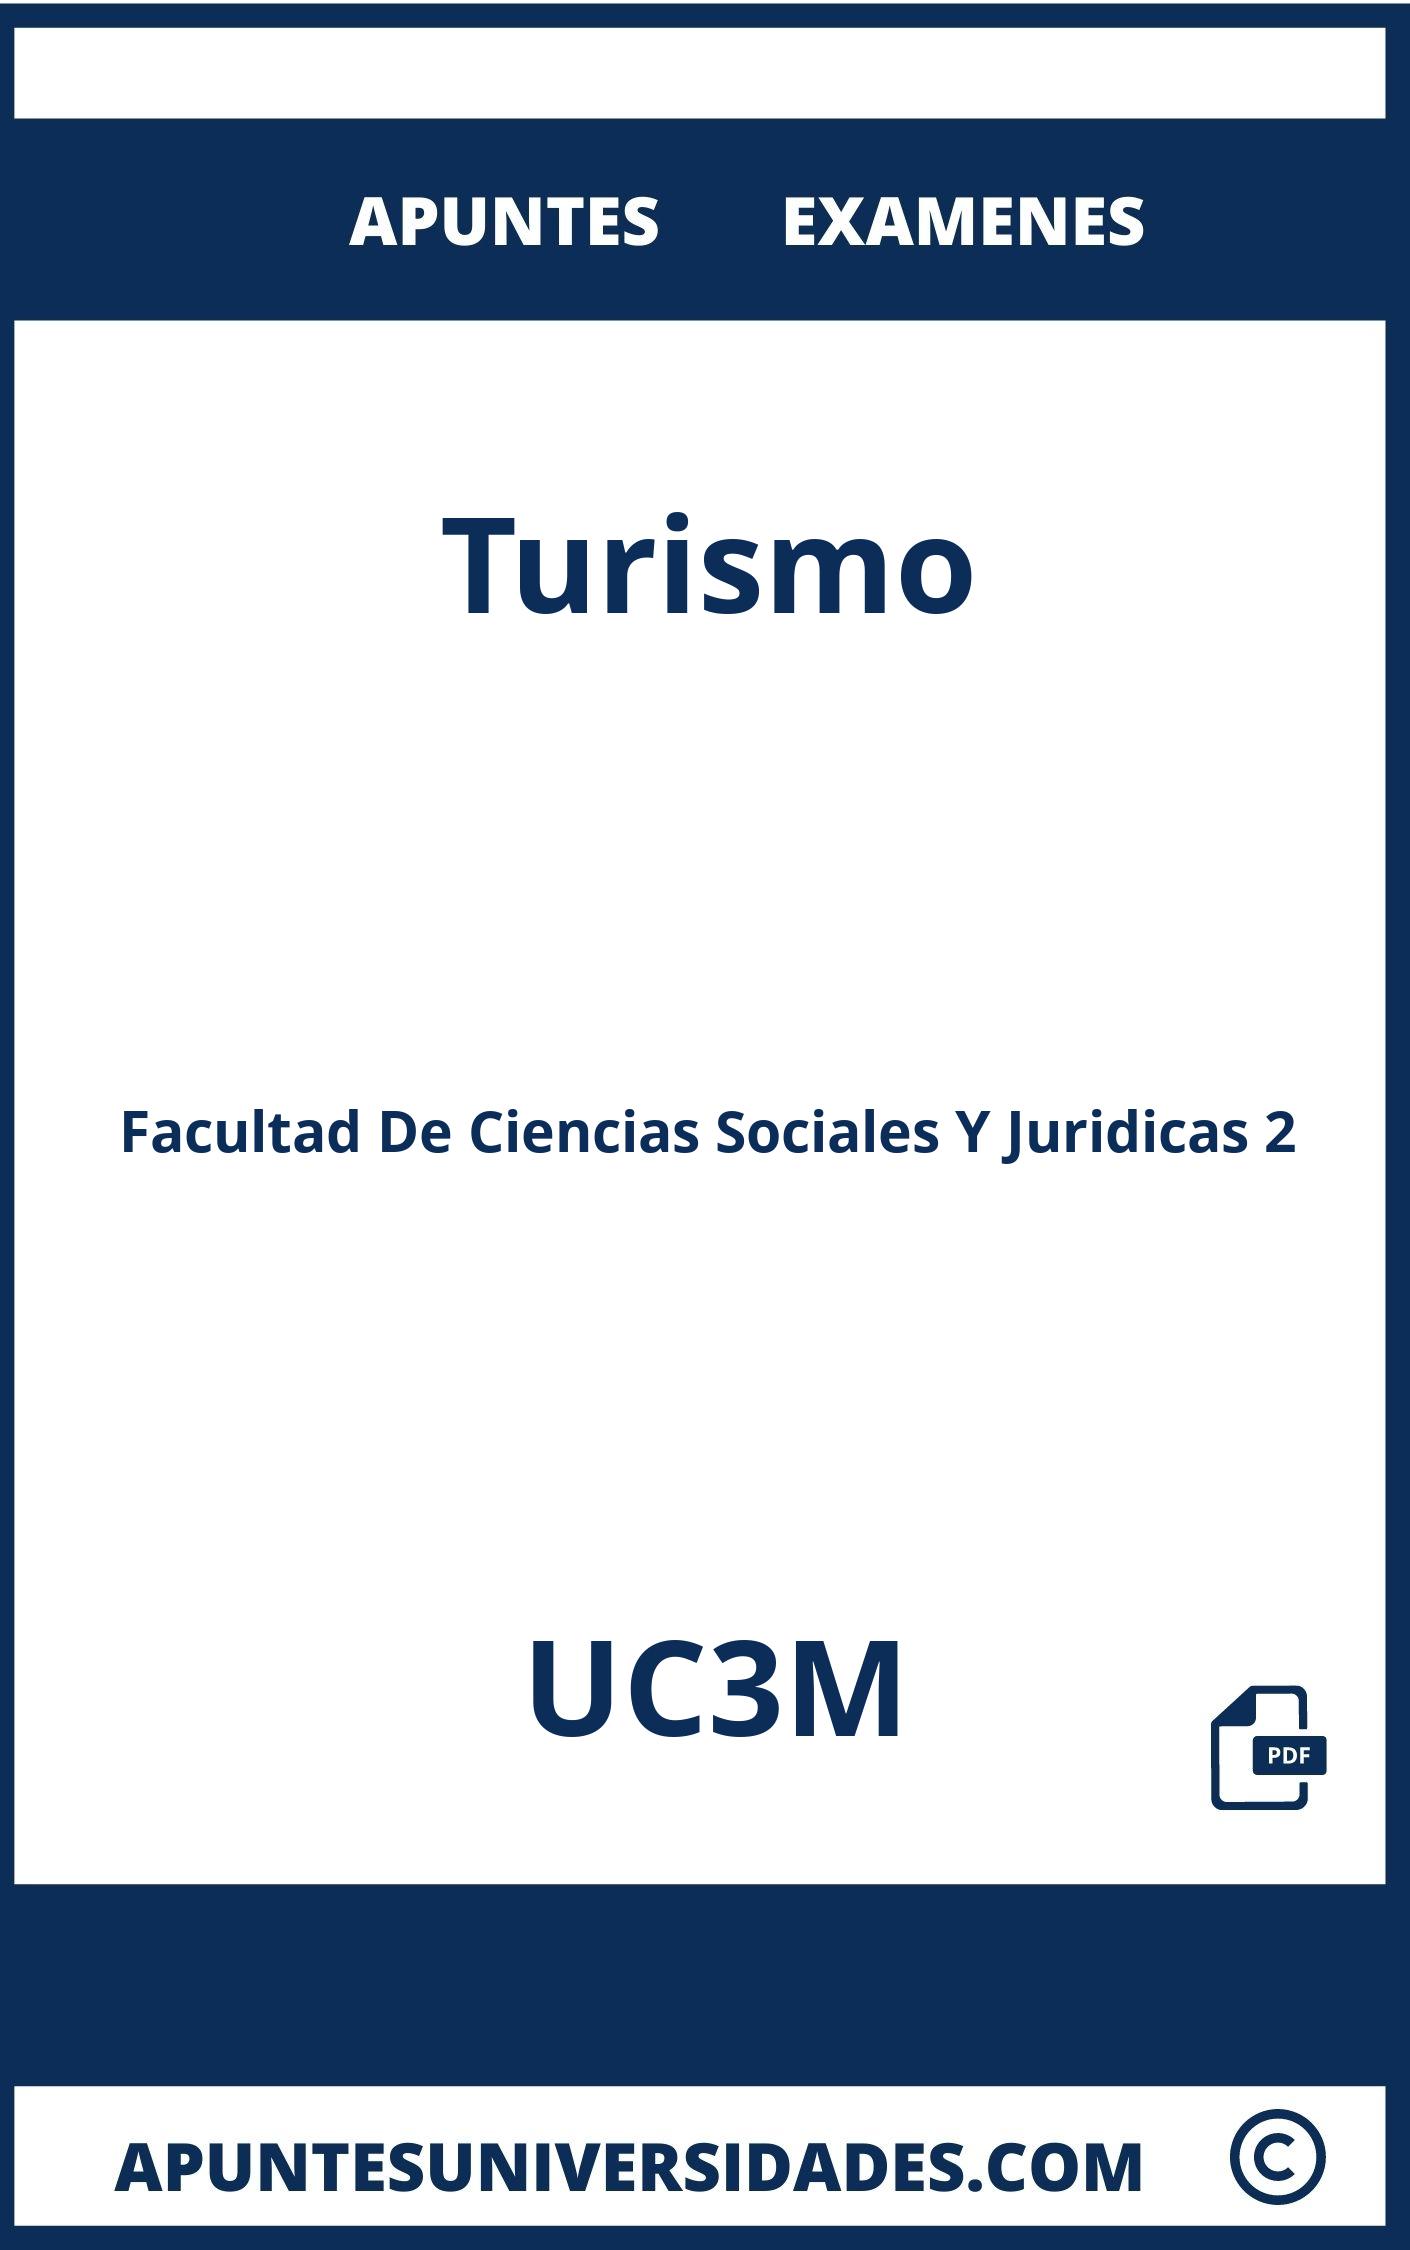 Apuntes y Examenes Turismo UC3M